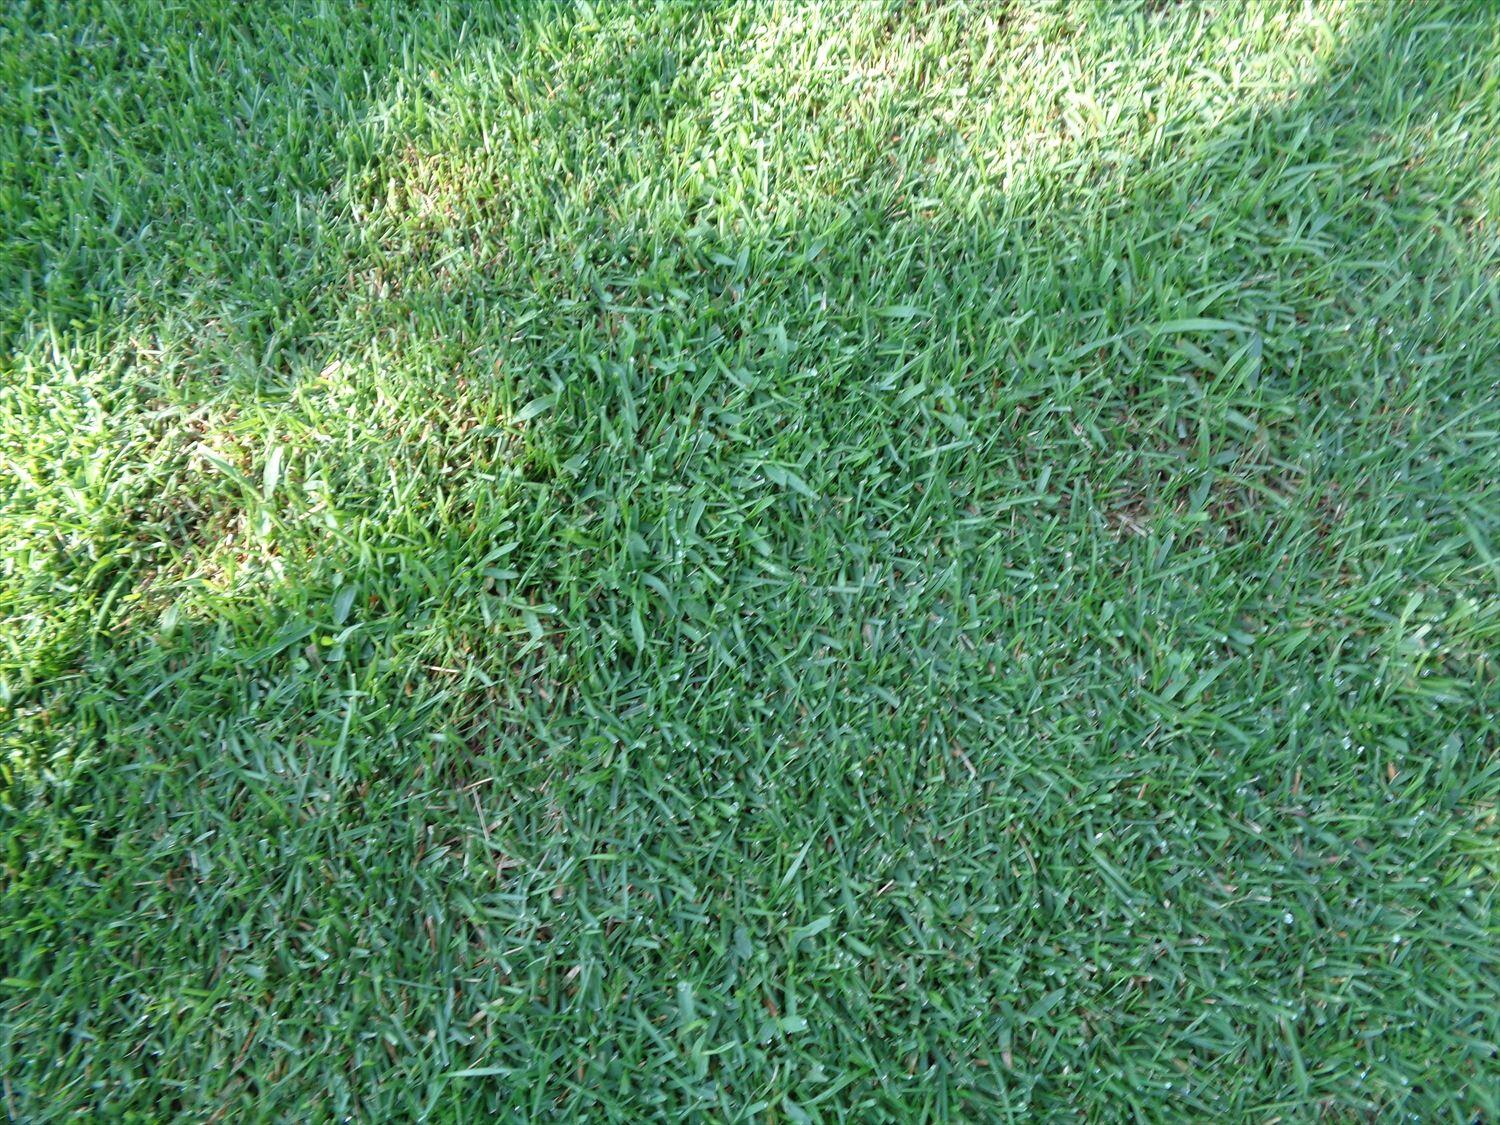 芝生のエッジカットと増殖するメヒシバ 芝生のお手入れとガーデニング